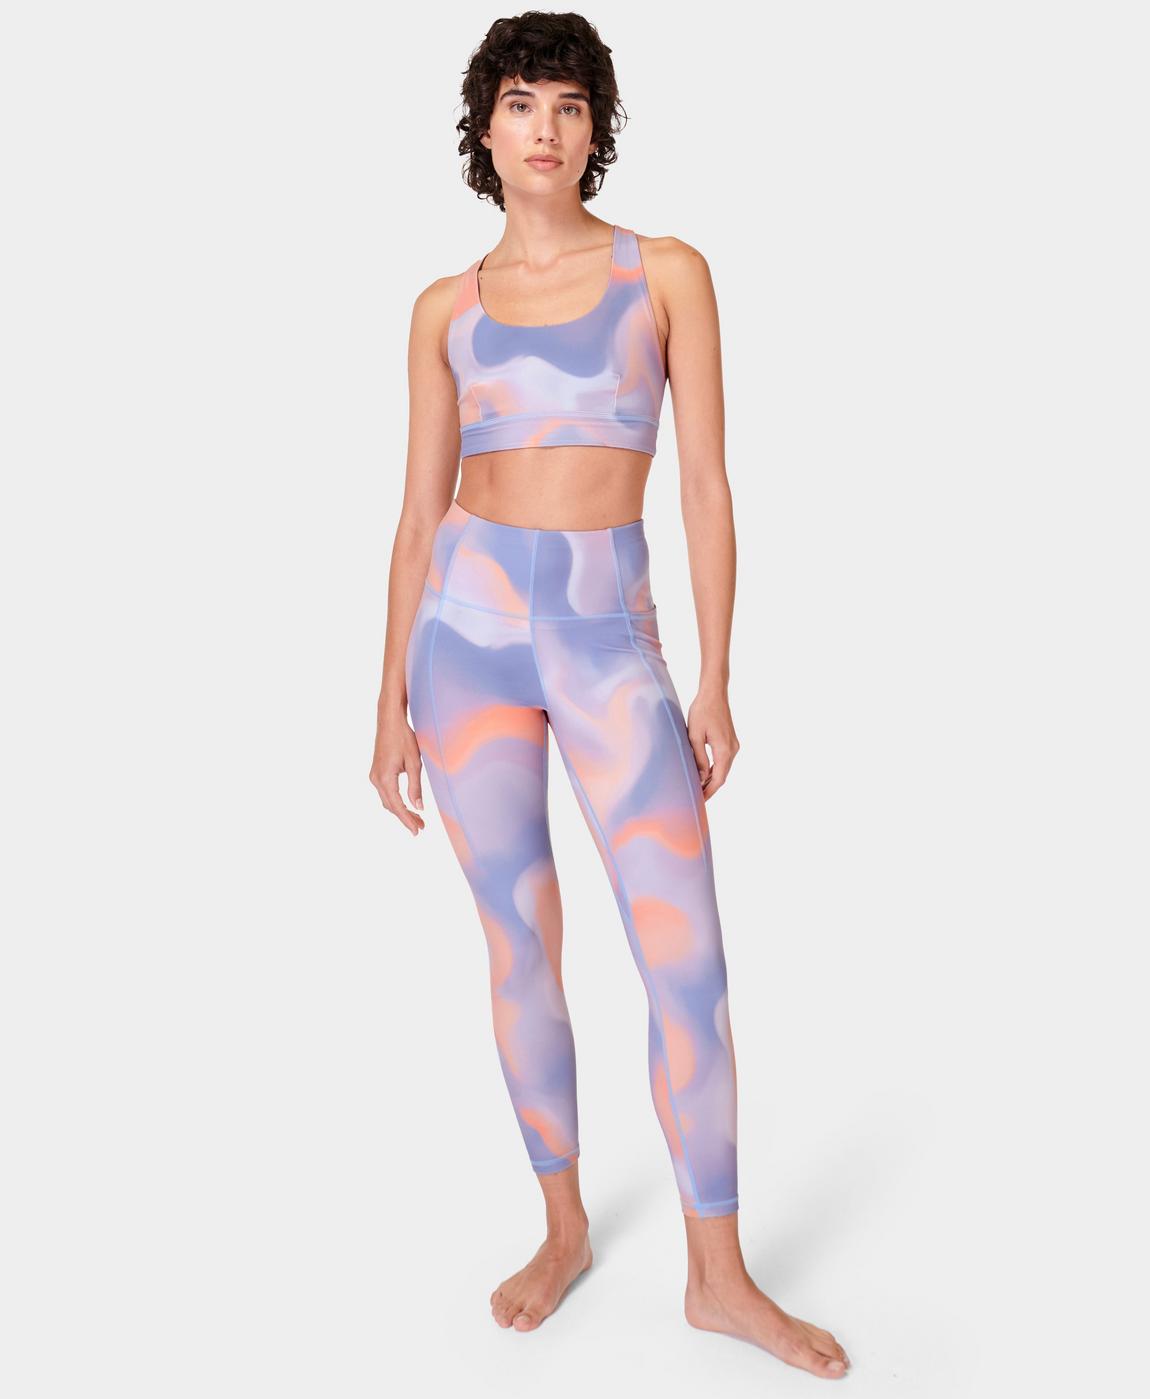 Super Soft 7/8 Yoga Leggings - Orange Cloud Print, Women's Leggings